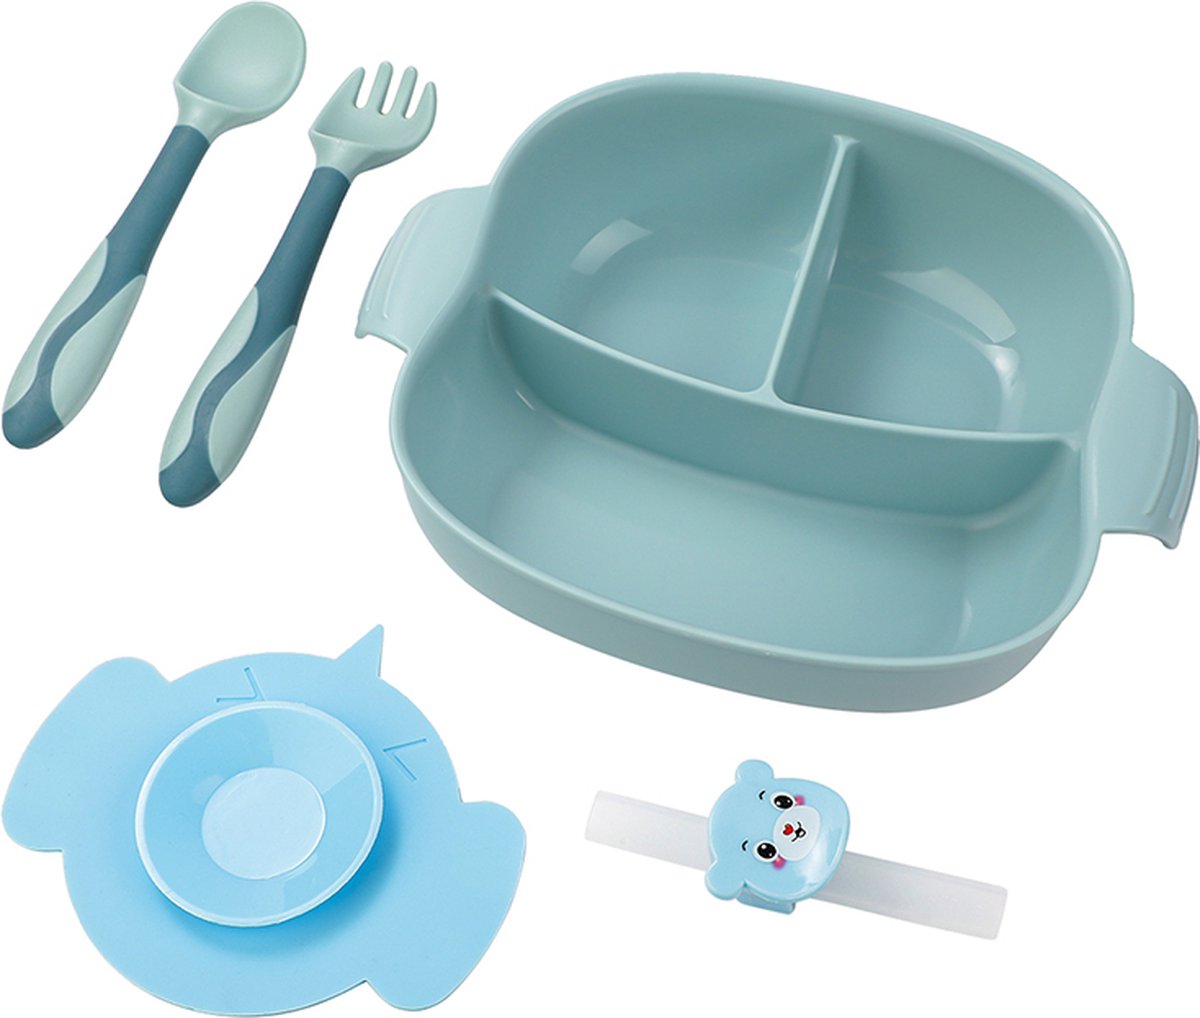 4-delig Plastic Servies Set Blauw - Plastic Servies Set - Babyservies - Kinderservies - Baby Bord Zuignap - Onbreekbaar